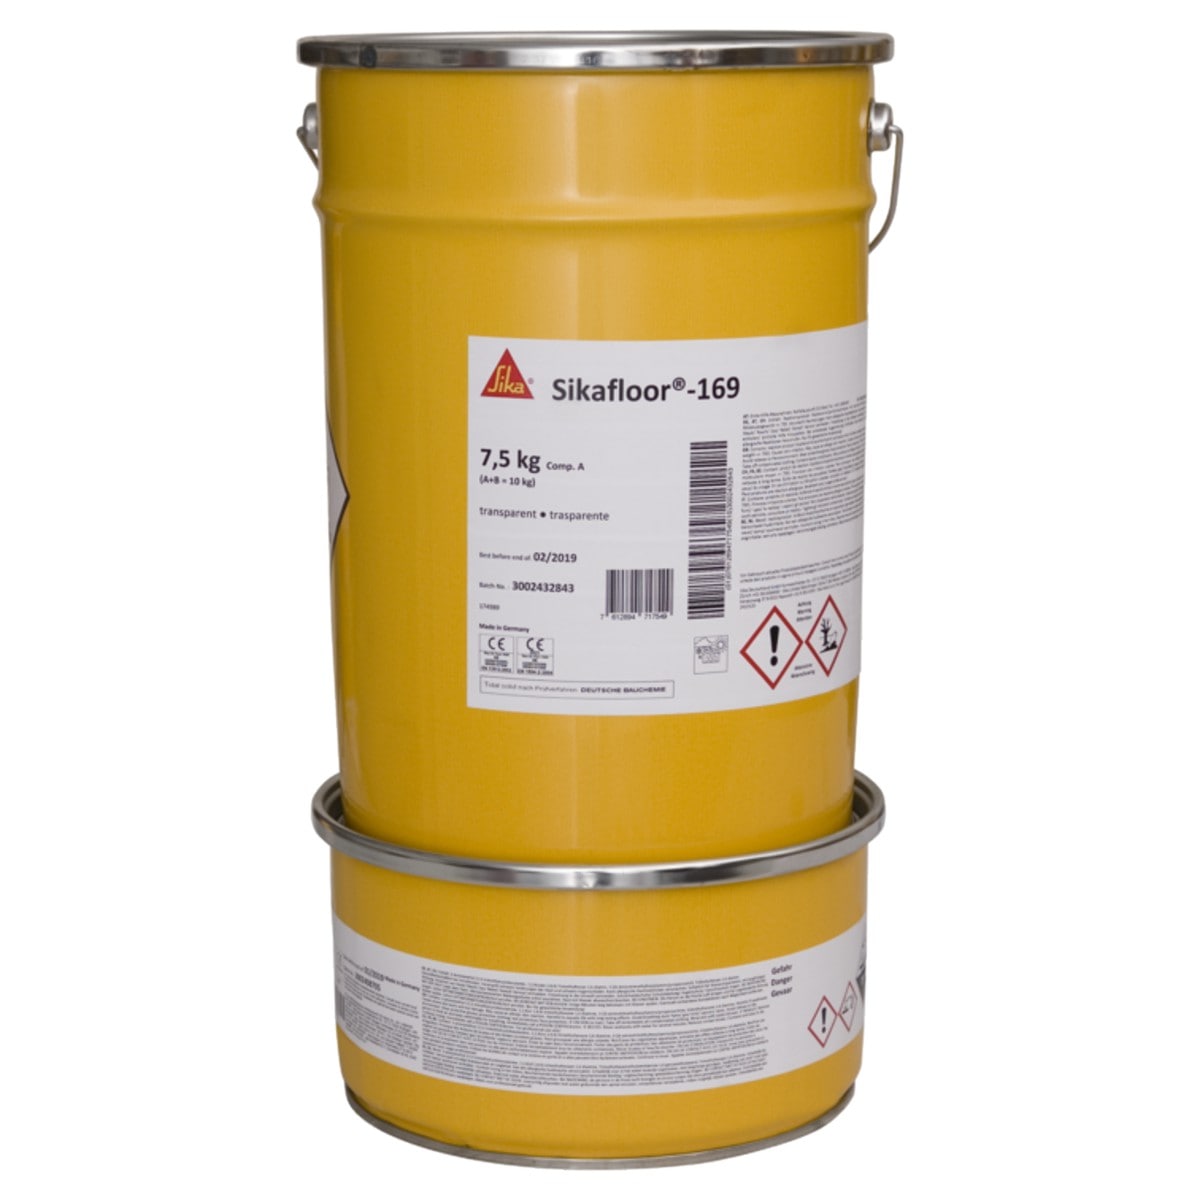 Sikafloor®-169 - 2-компонентне епоксидне в’яжуче для будівельних розчинів, шпаклівок і стяжок